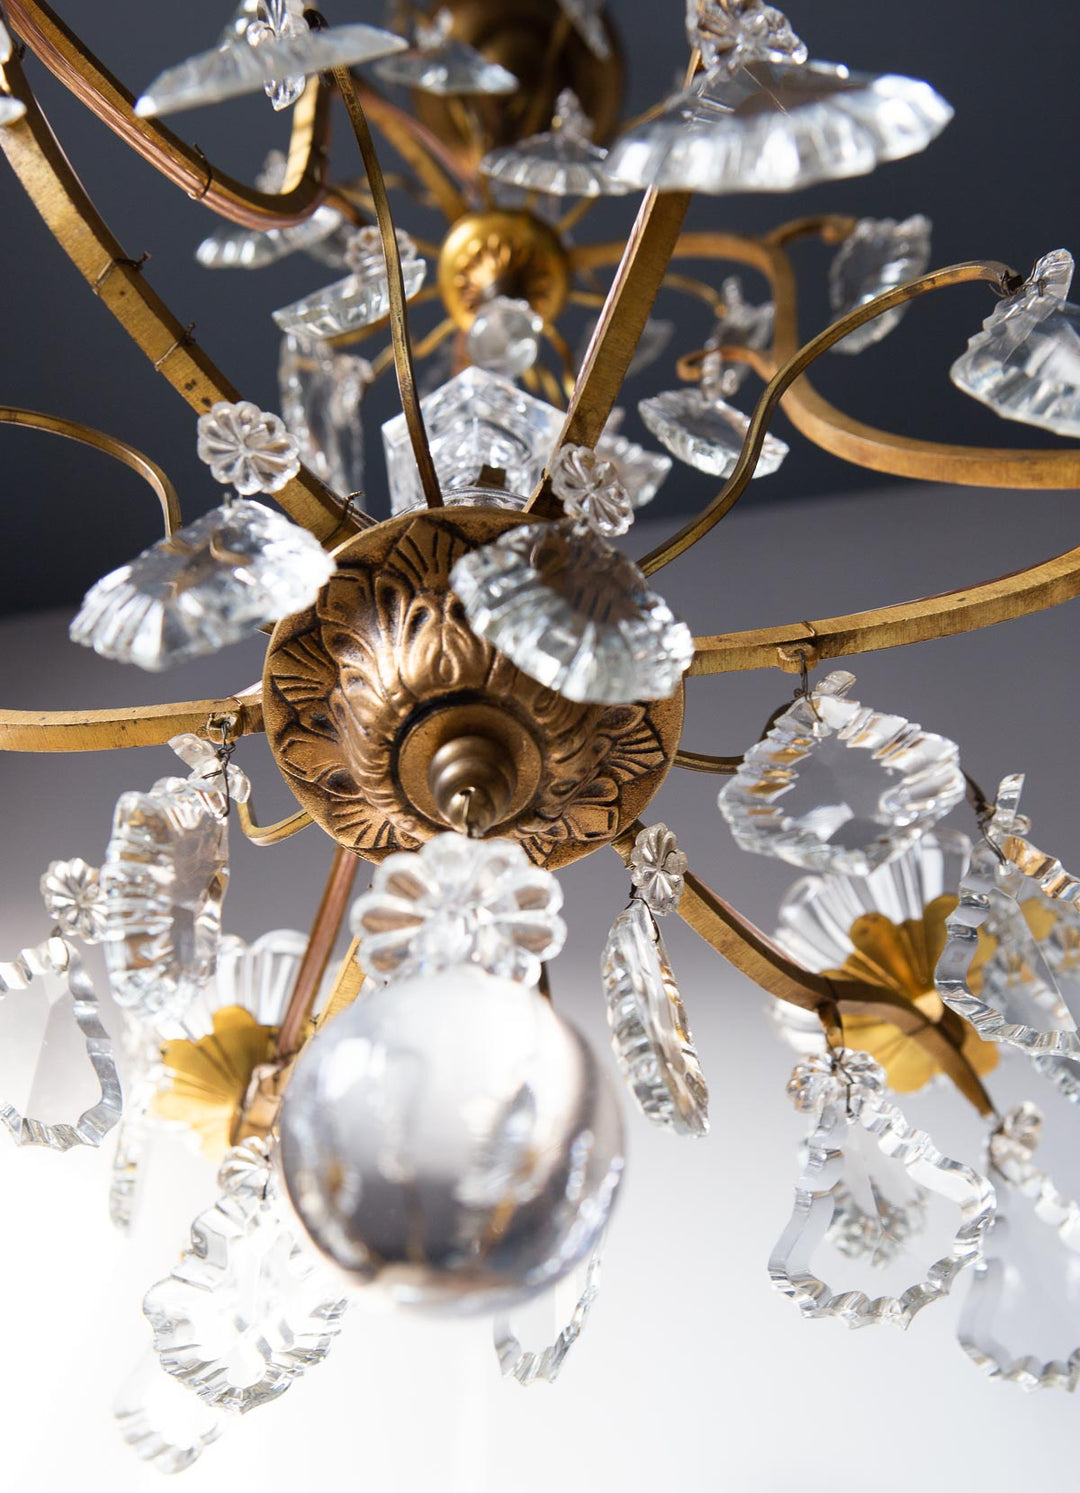 Antiguo chandelier francés cristales 6 brazos (VENDIDA)